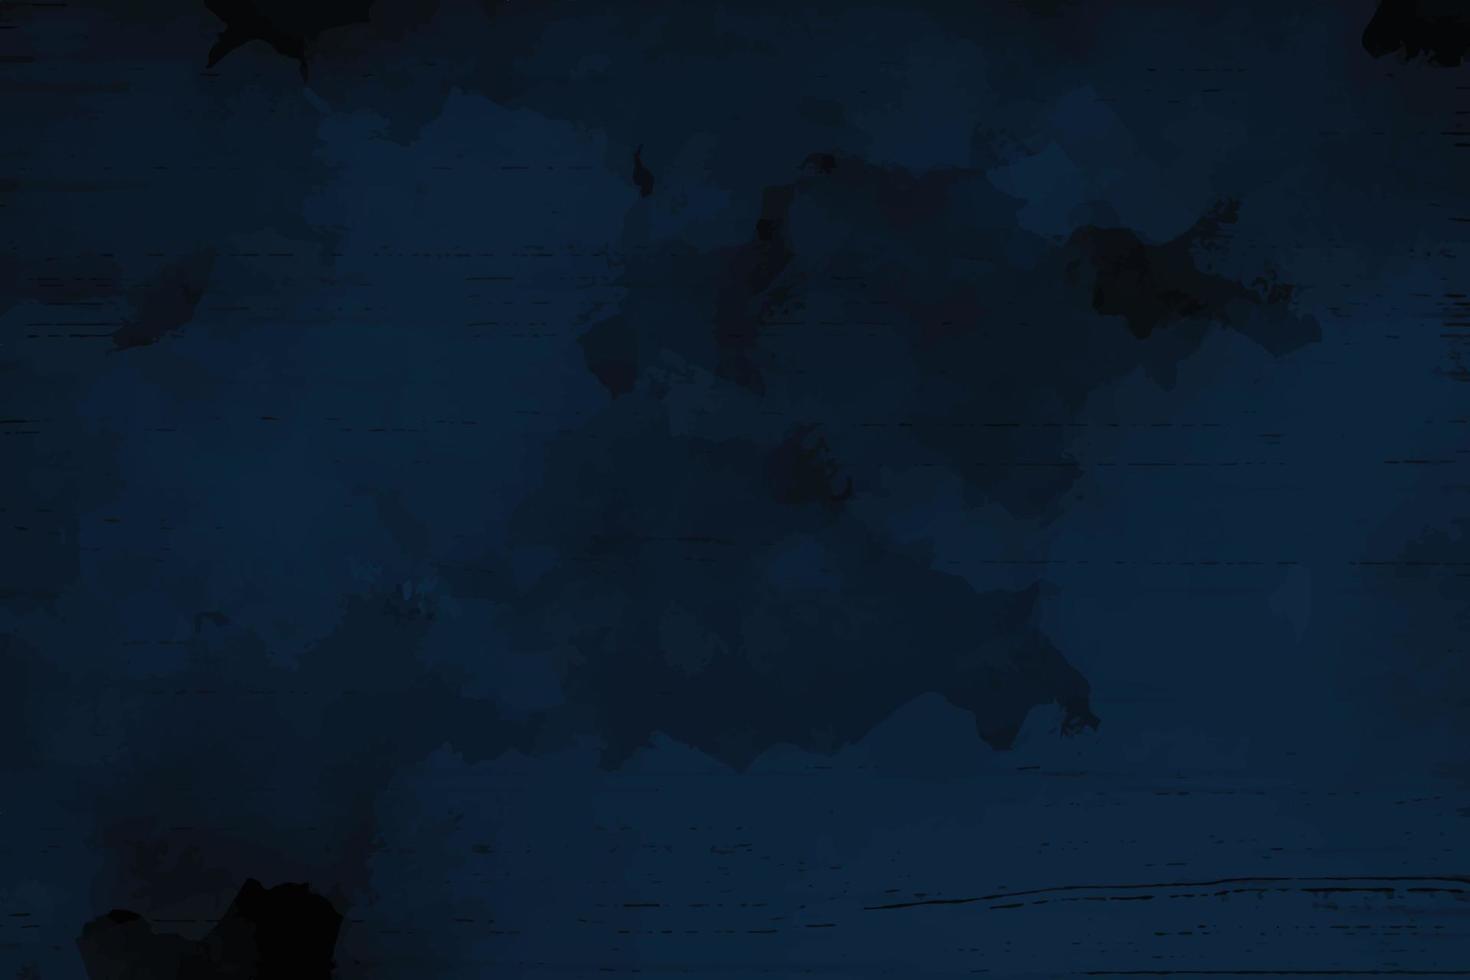 abstract indigo dark blue grunge textured background vector